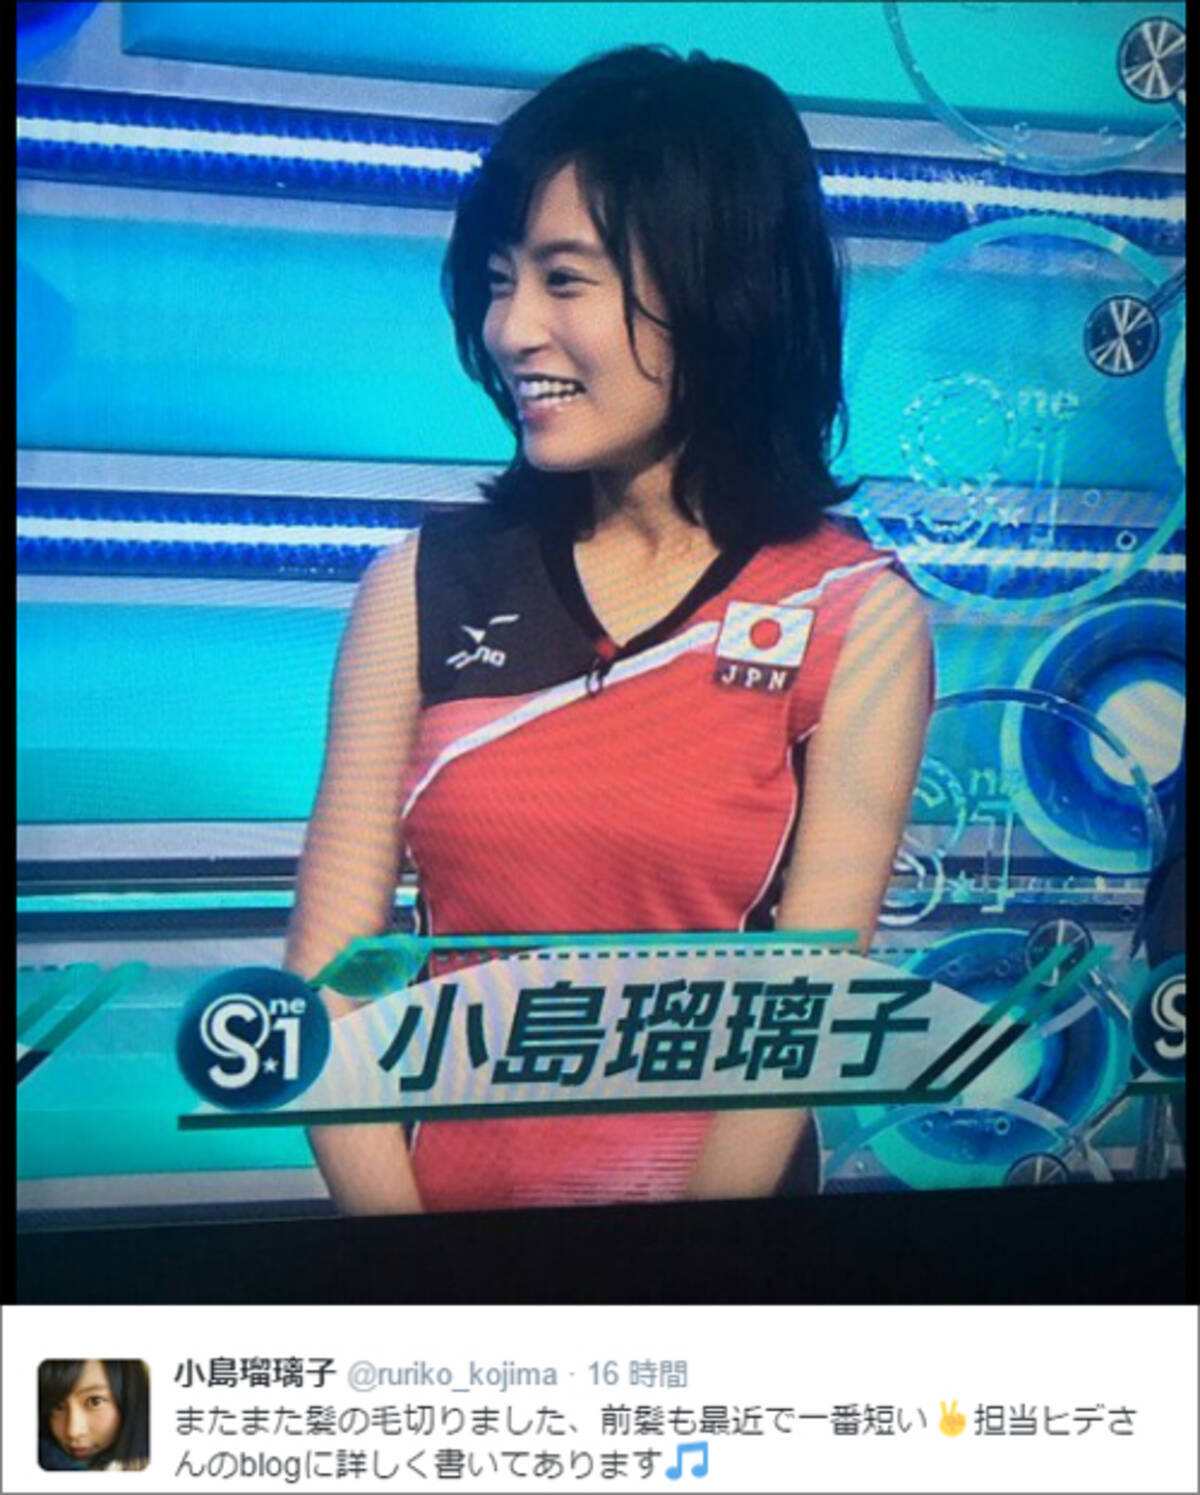 小島瑠璃子 刺激的なバレーボールユニフォーム姿 揺れるバストにファン興奮 16年5月16日 エキサイトニュース